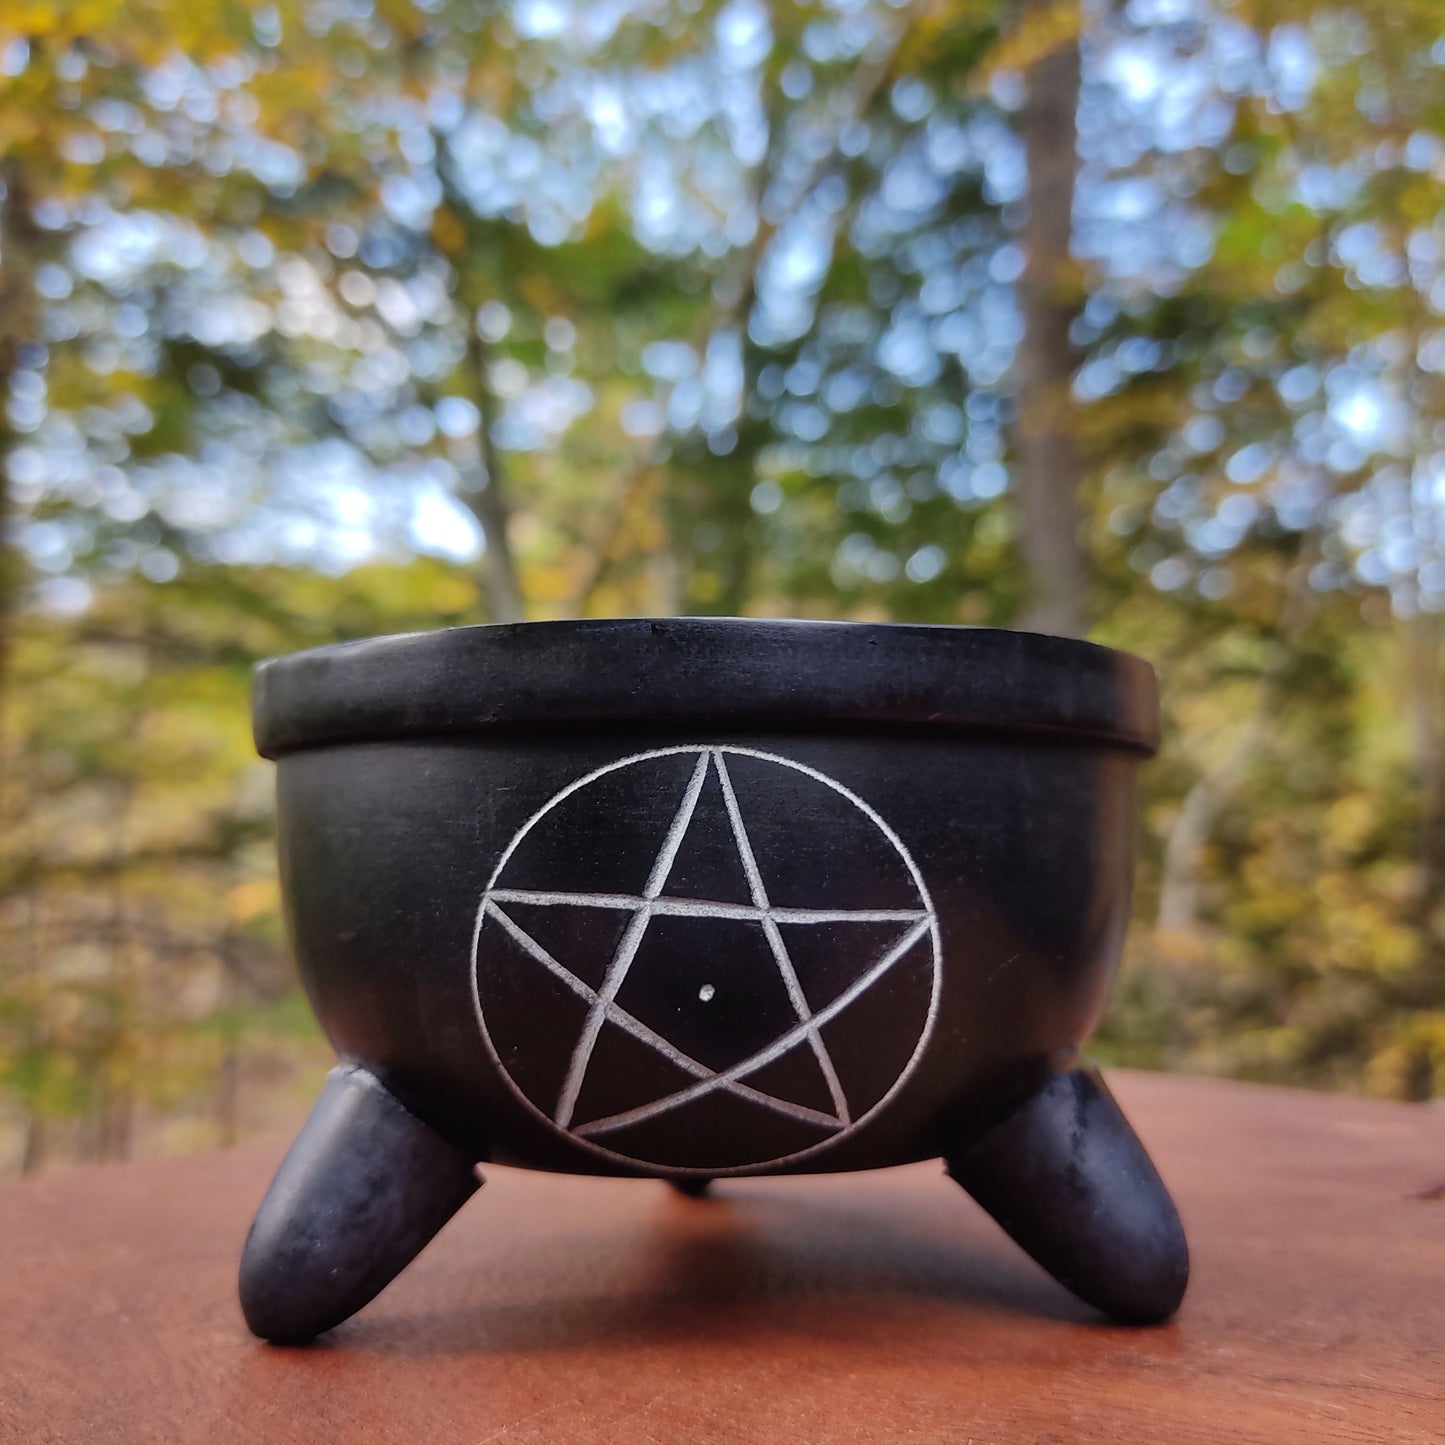 pentacle incense burner offering bowl